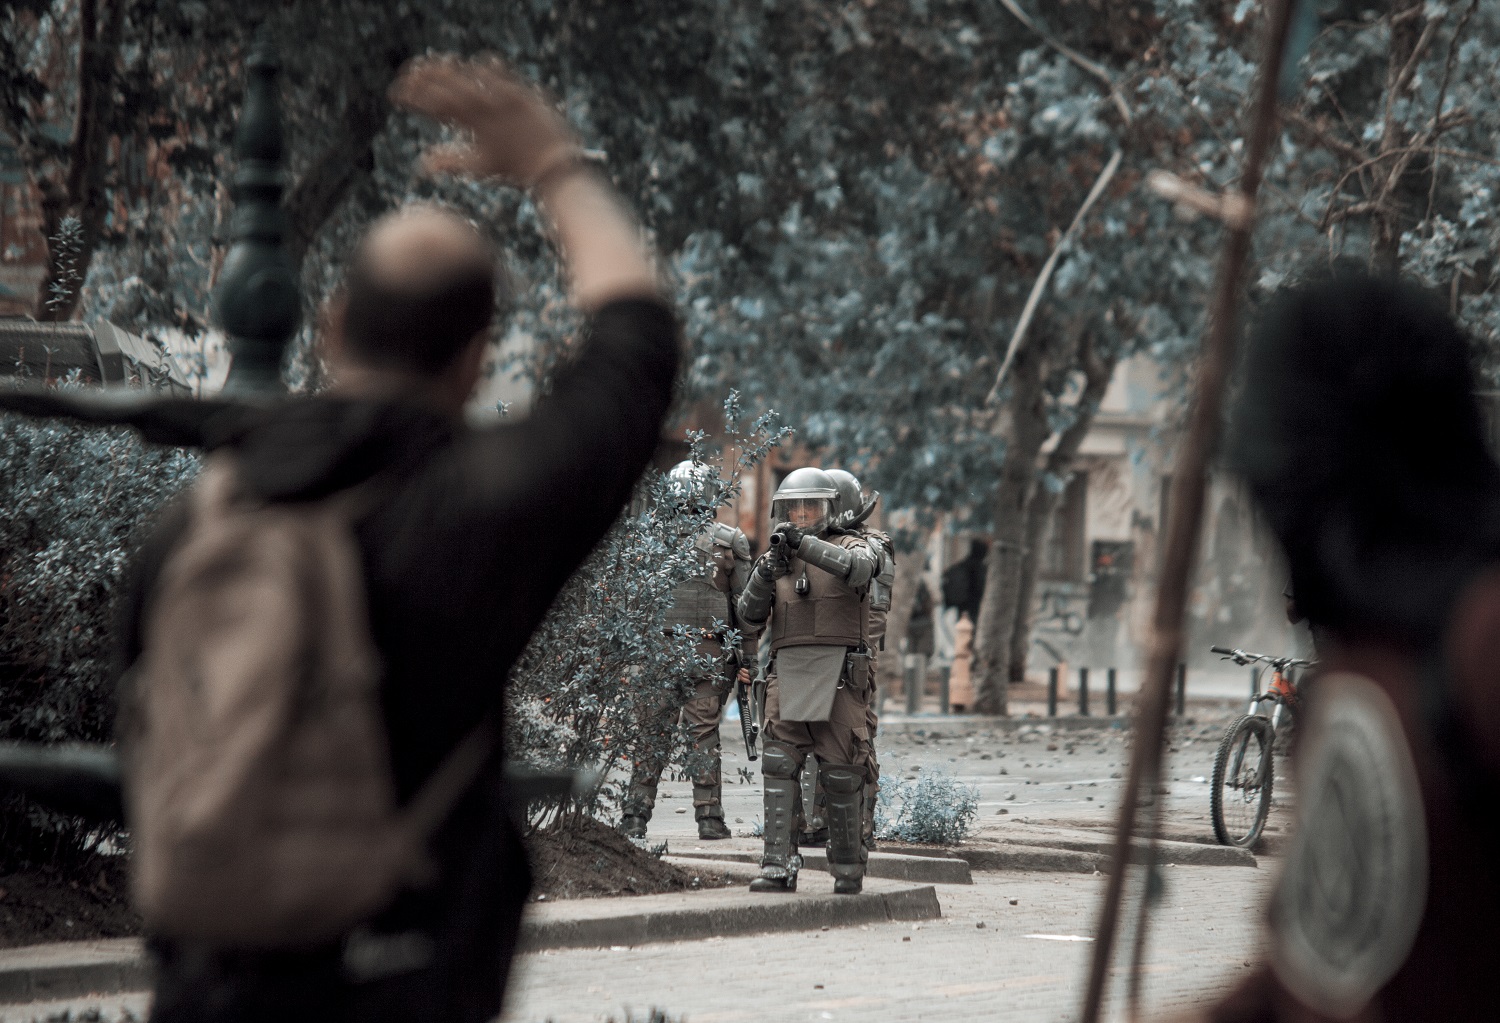 Funcionario de Carabineros apunta con su carabina lanzagases a manifestantes durante las protestas | Foto: José Miguel Araya, @josemiguelaraya